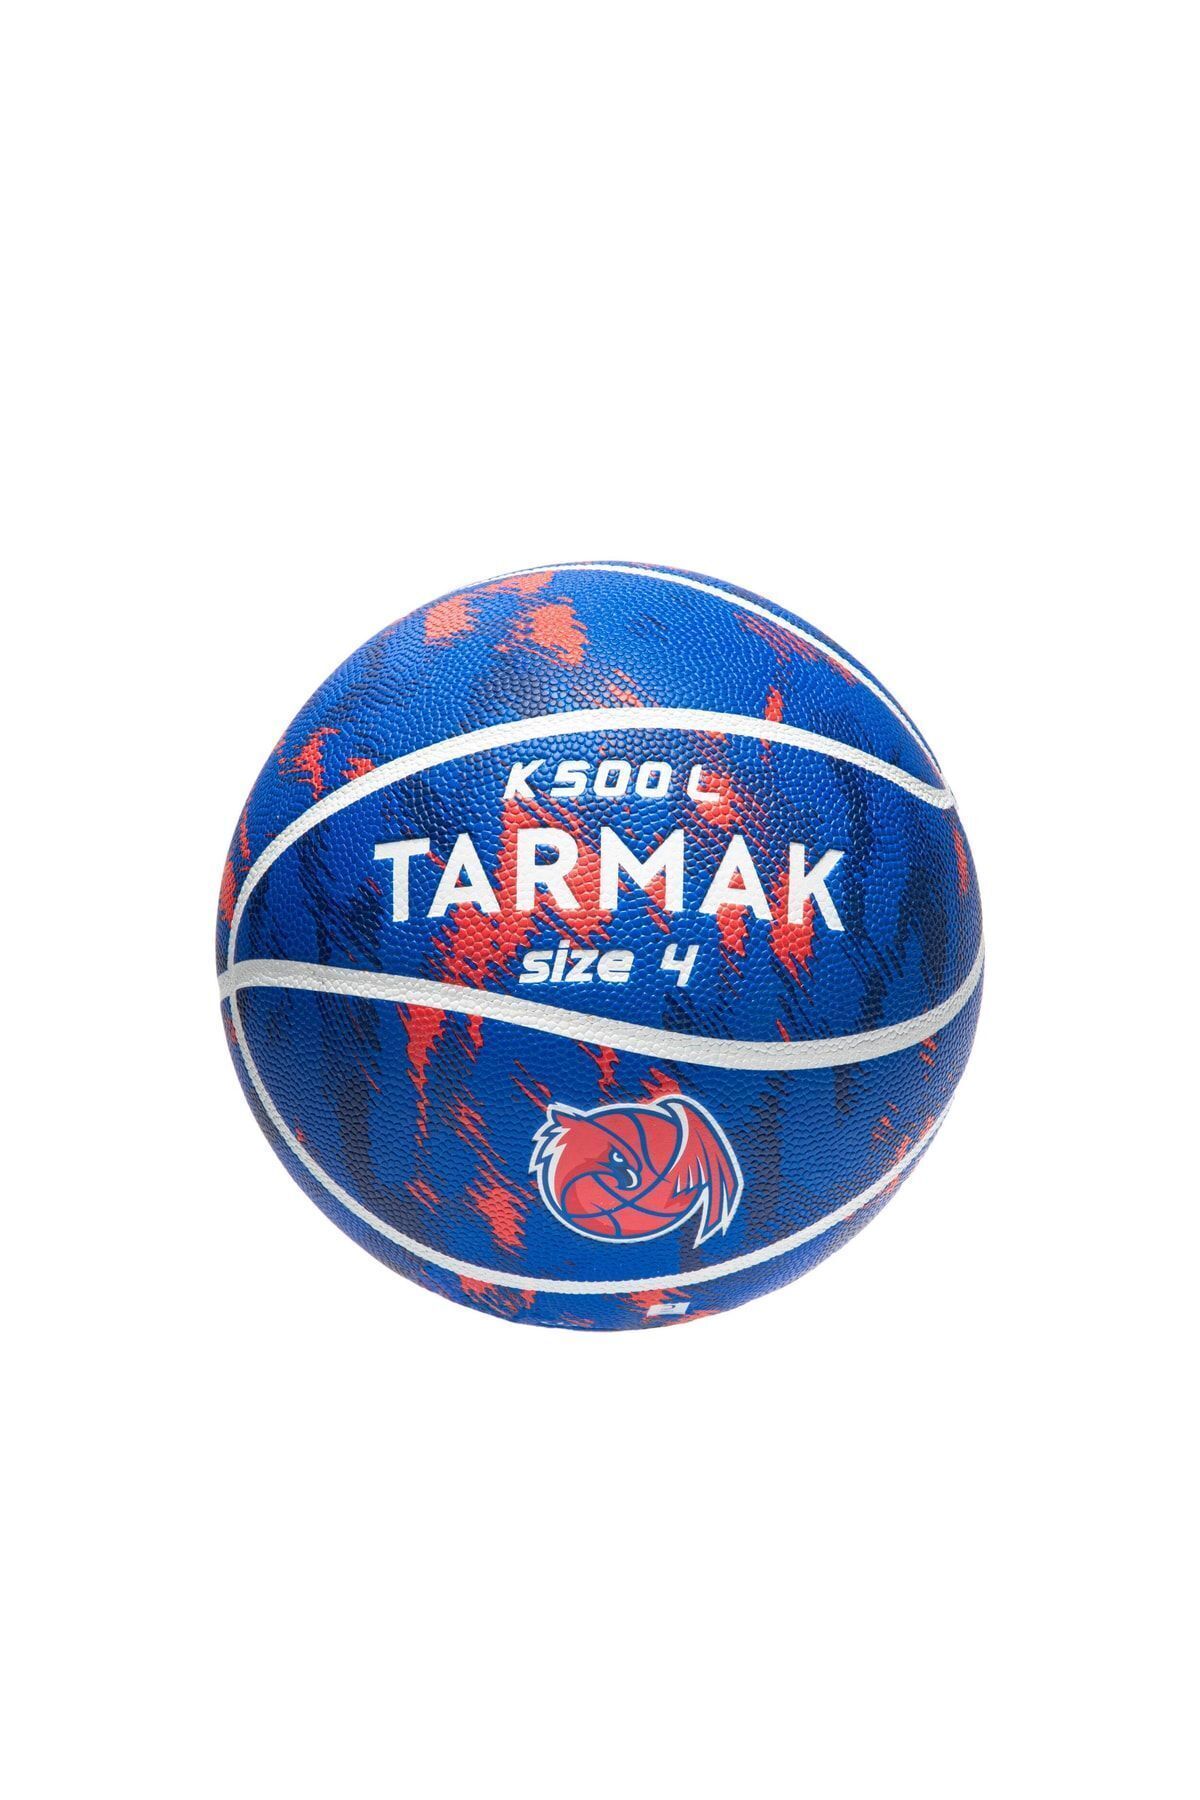 Decathlon Tarmak Basketbol Topu - 4 Numara - Kırmızı / Mavi